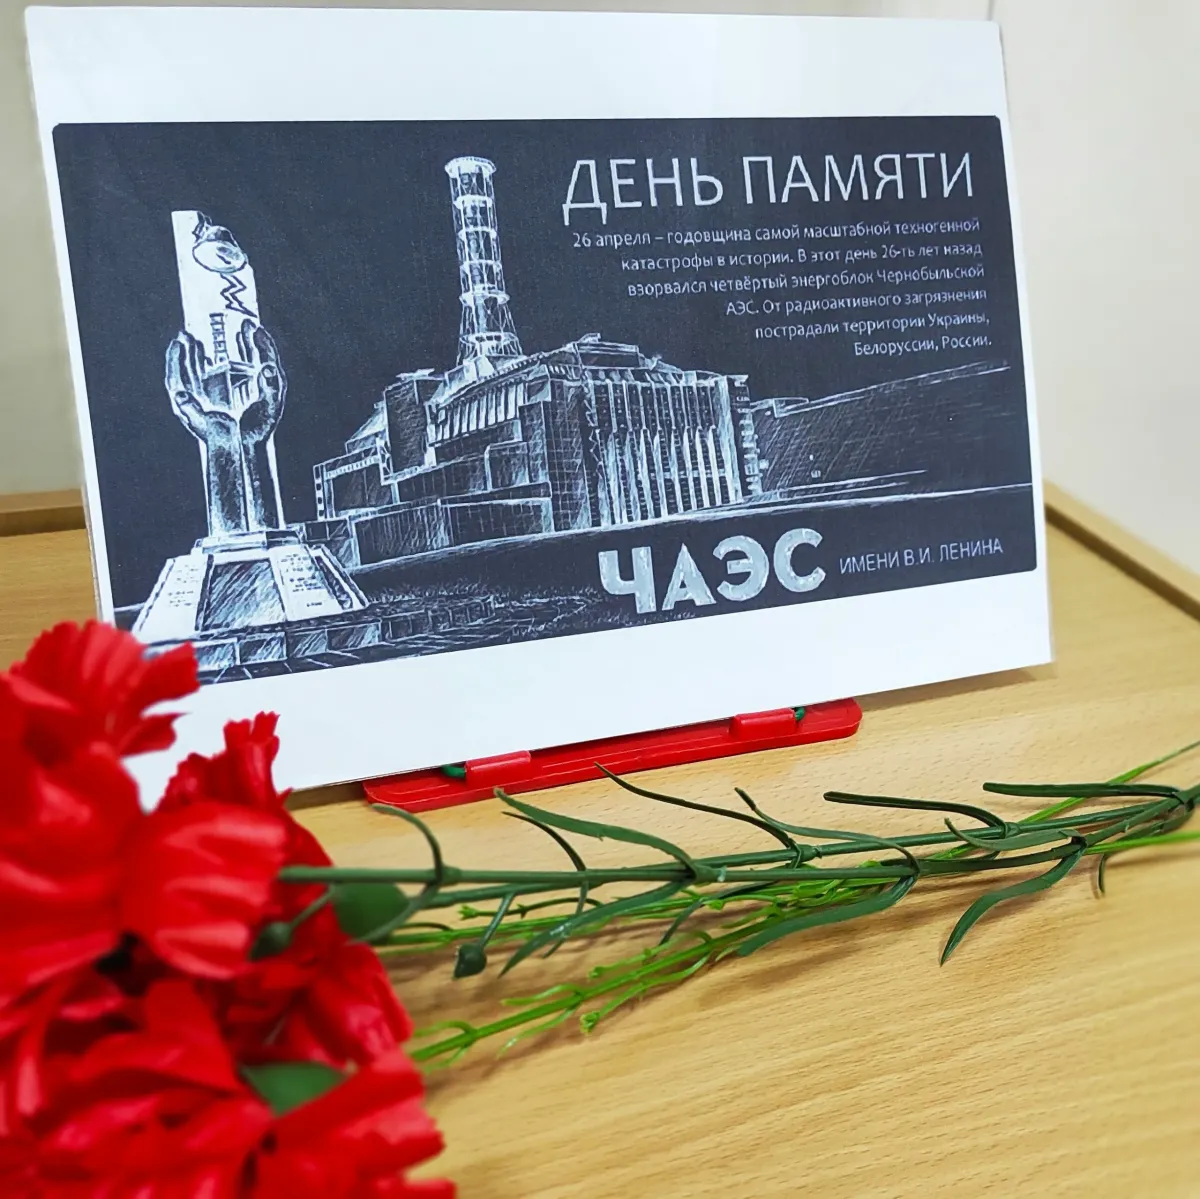 26 Апреля Чернобыль день памяти. 26 Апреля Чернобыльская катастрофа день памяти. 26 Апреля ЧАЭС память. Памяти чернобыльцев.